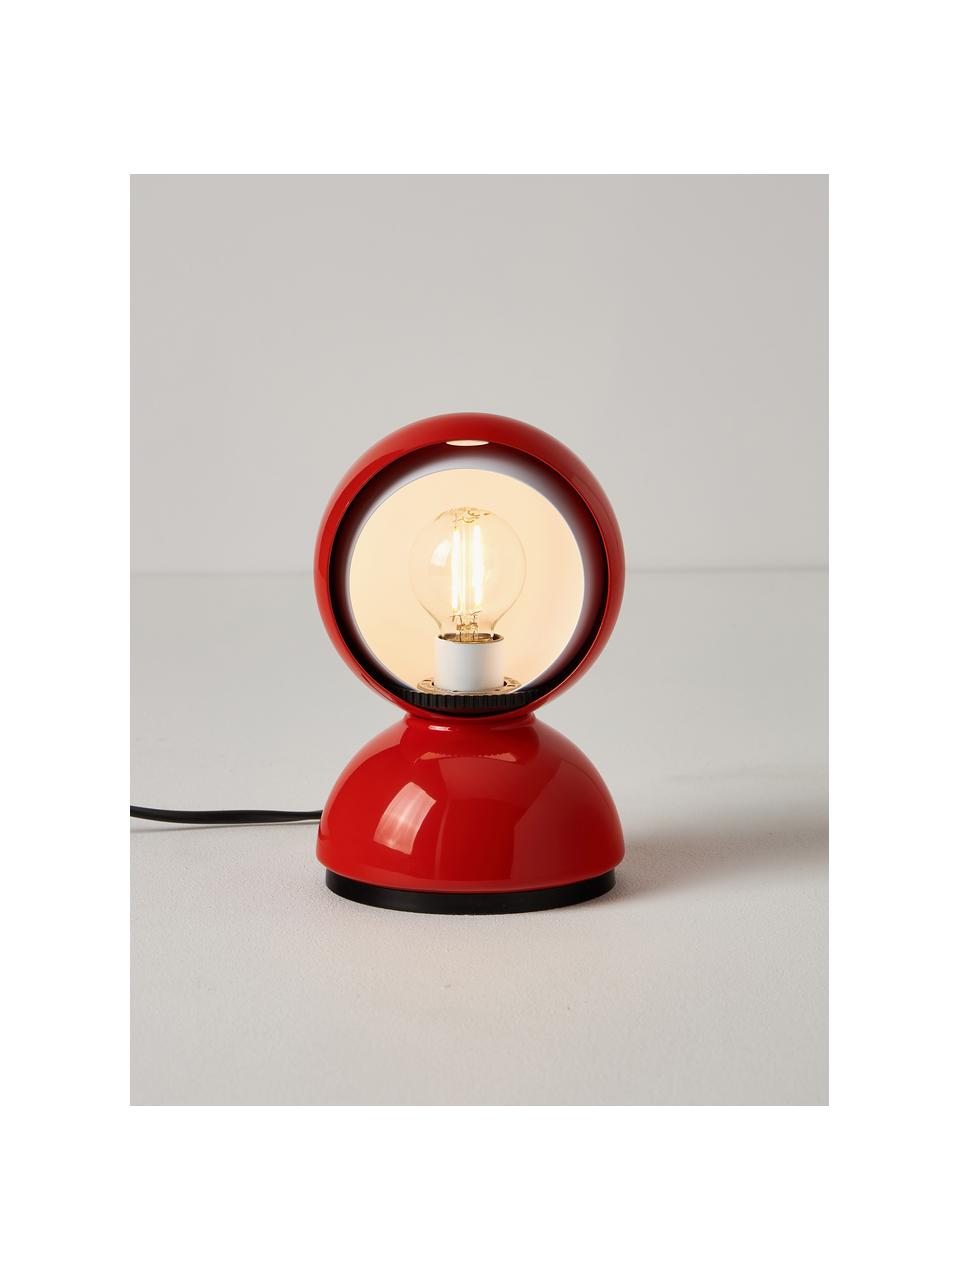 Kleine verstellbare Tischlampe Eclisse, Lampenschirm: Polycarbonat, Technopolym, Gestell: Stahl, beschichtet, Orange, Ø 12 x H 18 cm